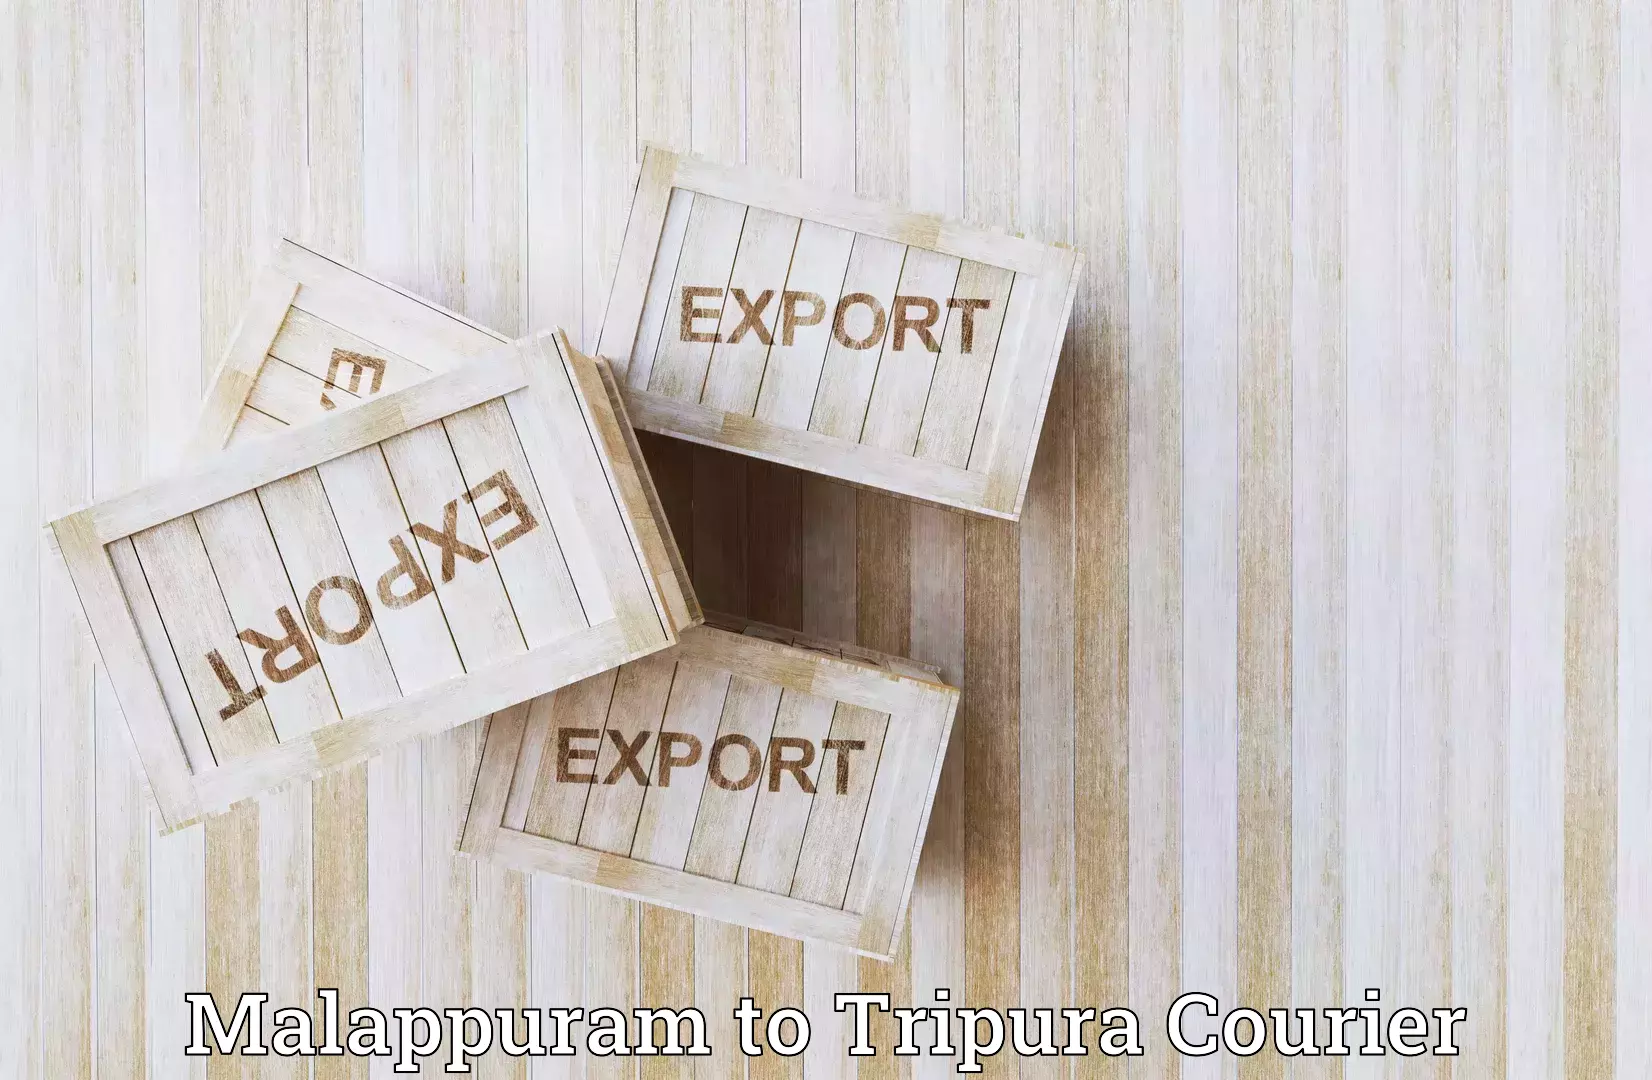 Customer-centric shipping Malappuram to IIIT Agartala